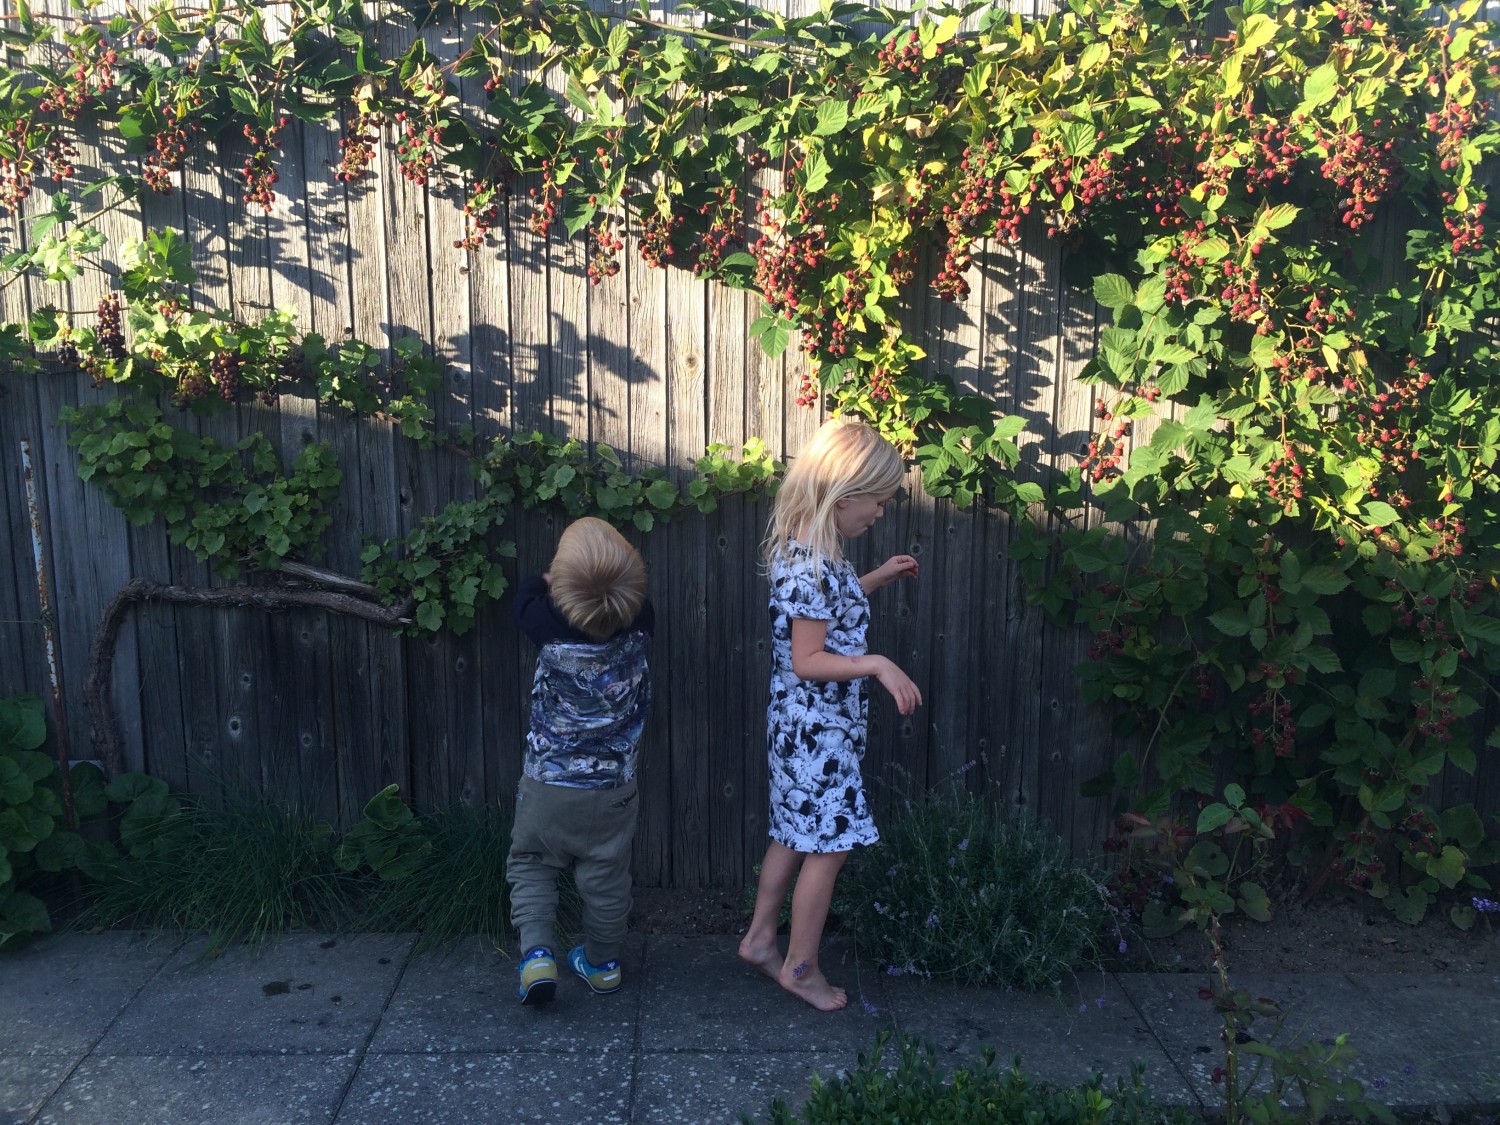 Børnene plukker brombær